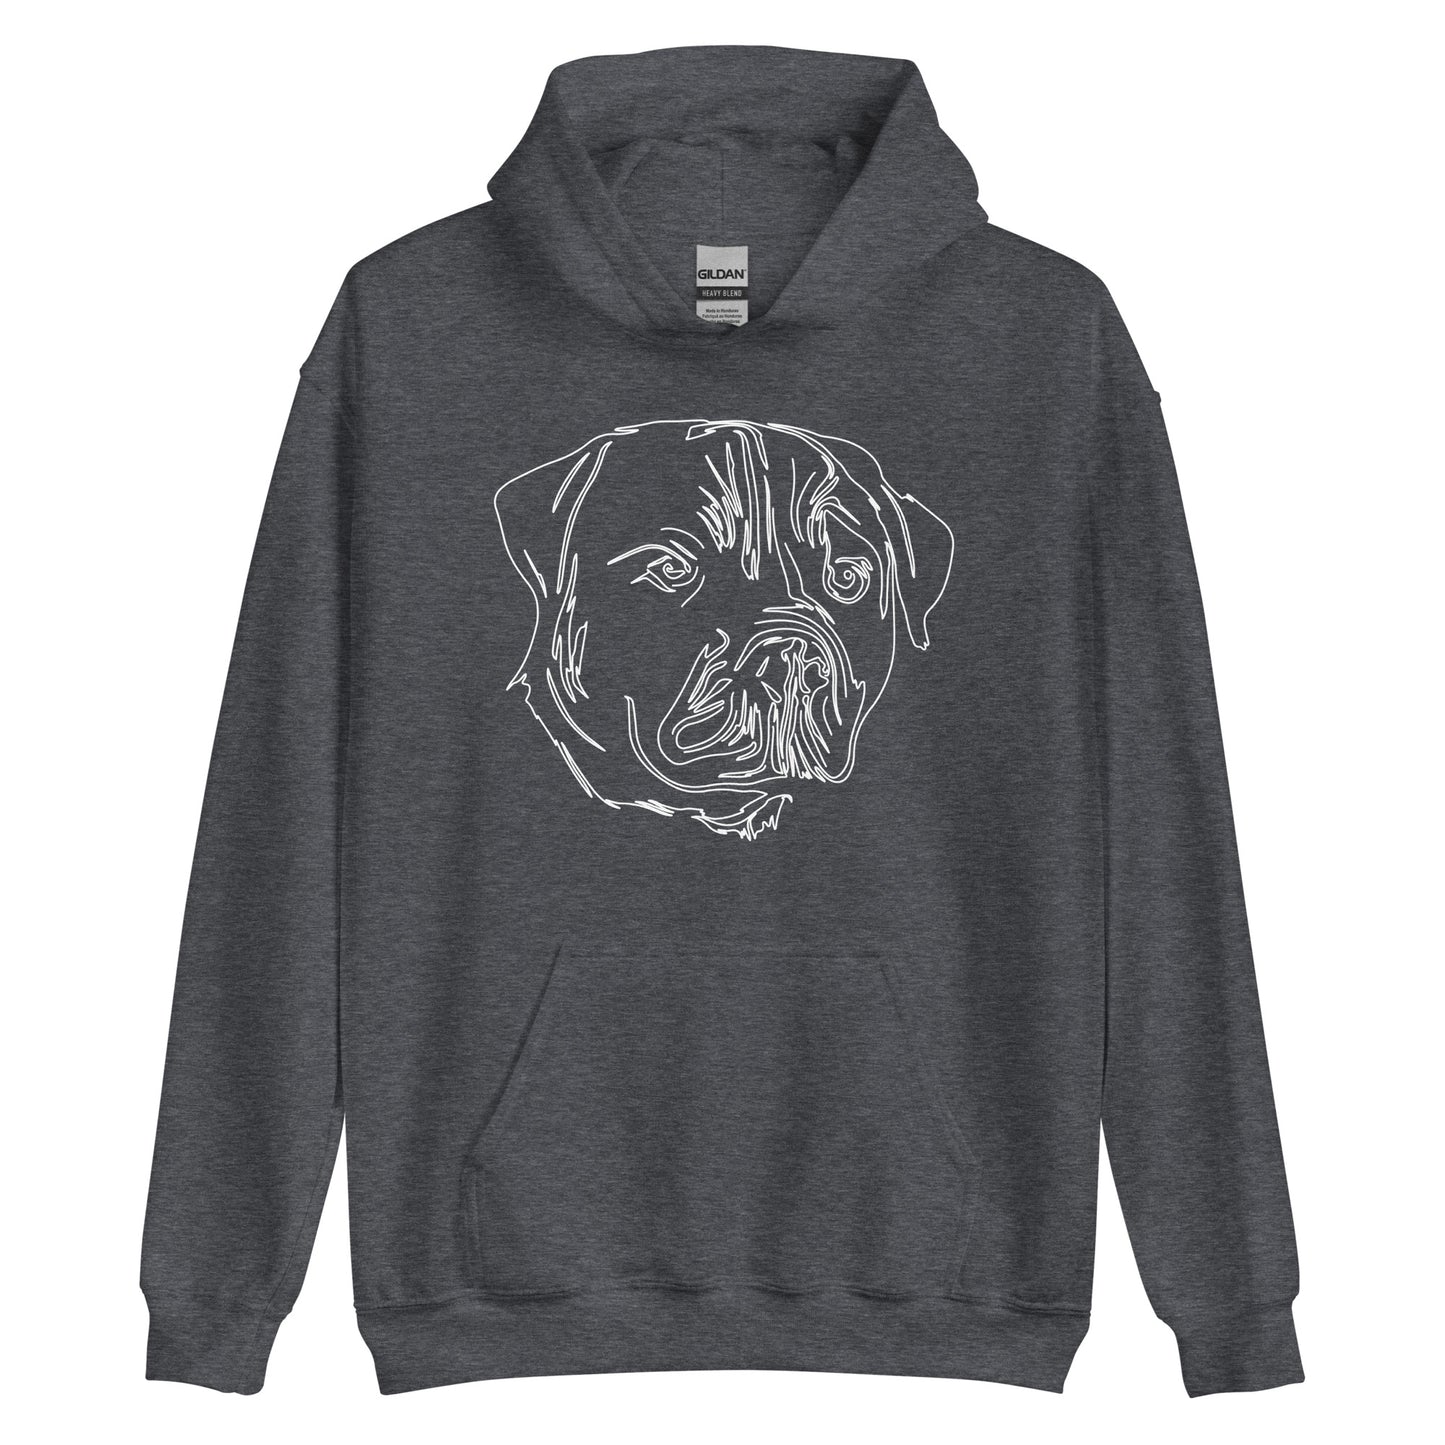 White line Rottweiler face on unisex dark heather hoodie